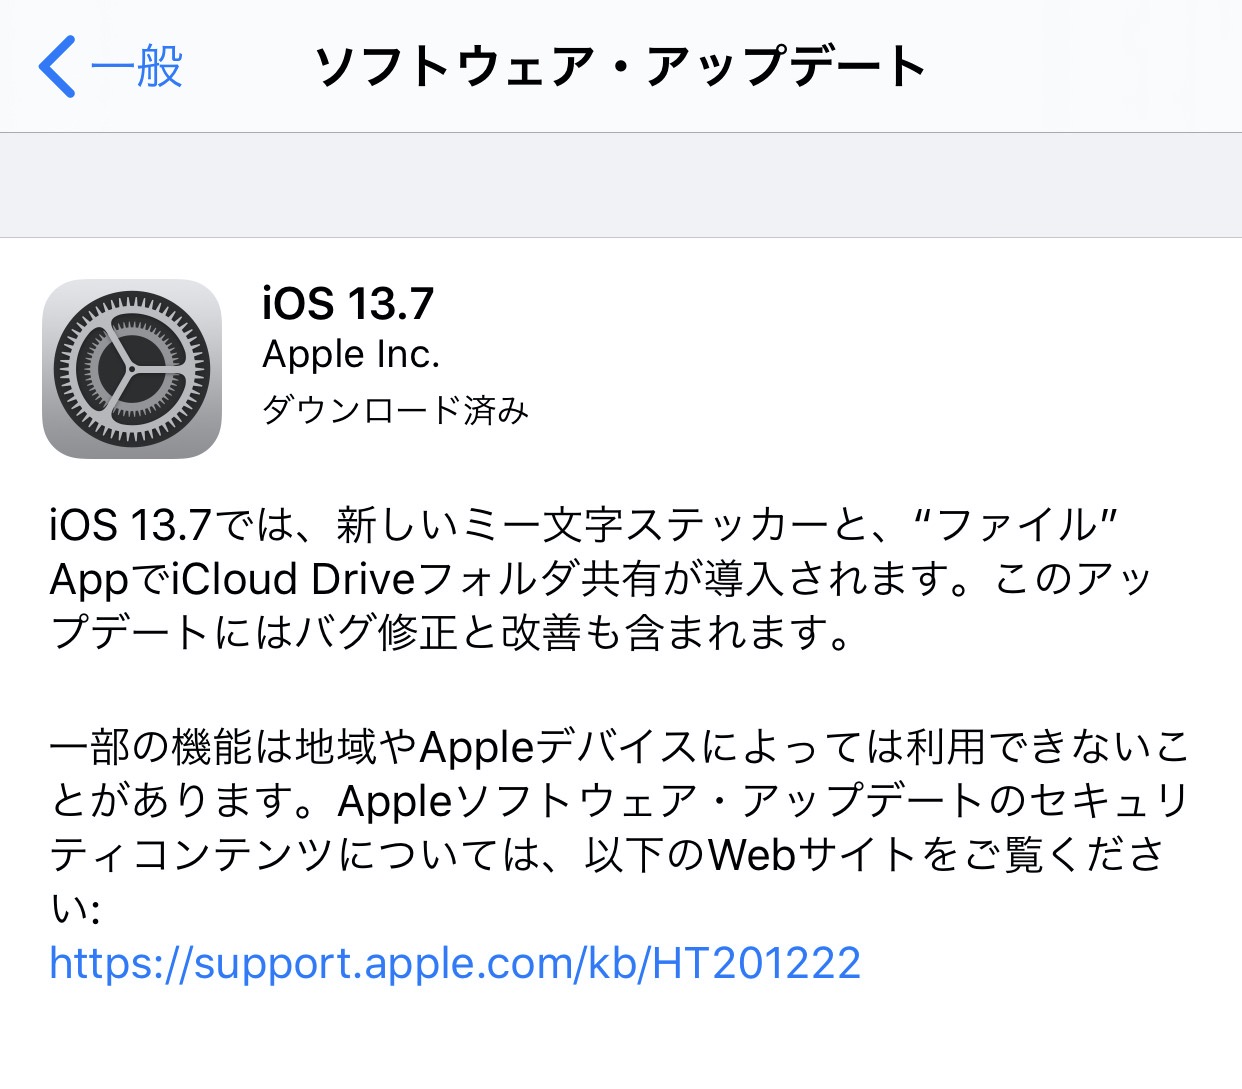 【iOS 13】新型コロナウイルスの接触通知機能を搭載した「iOS 13.7ソフトウェアアップデート」リリース